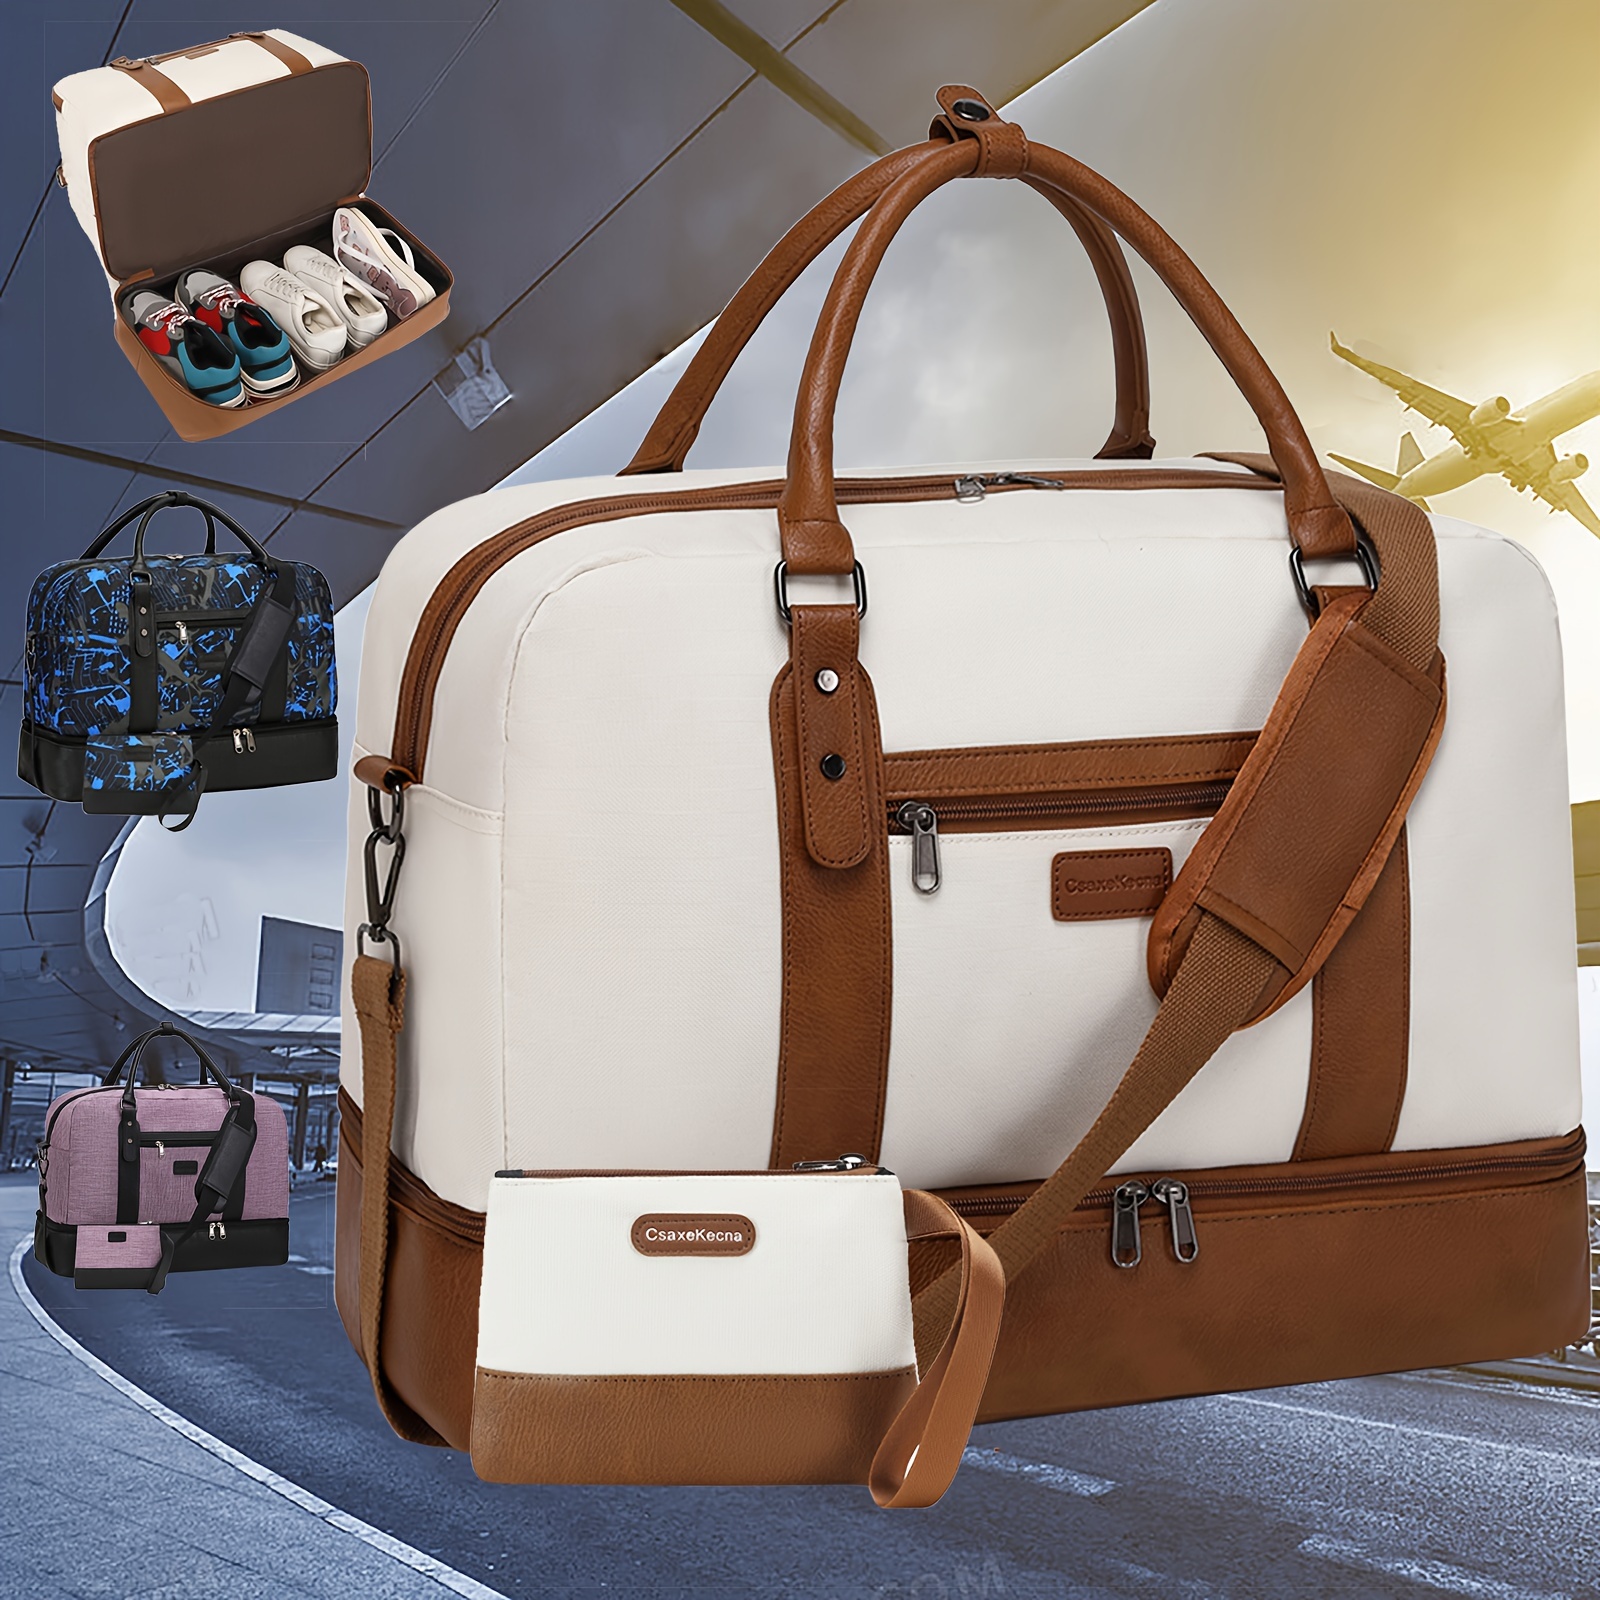 Men's Designer Travel Accessories, Luggage & Travel Bags